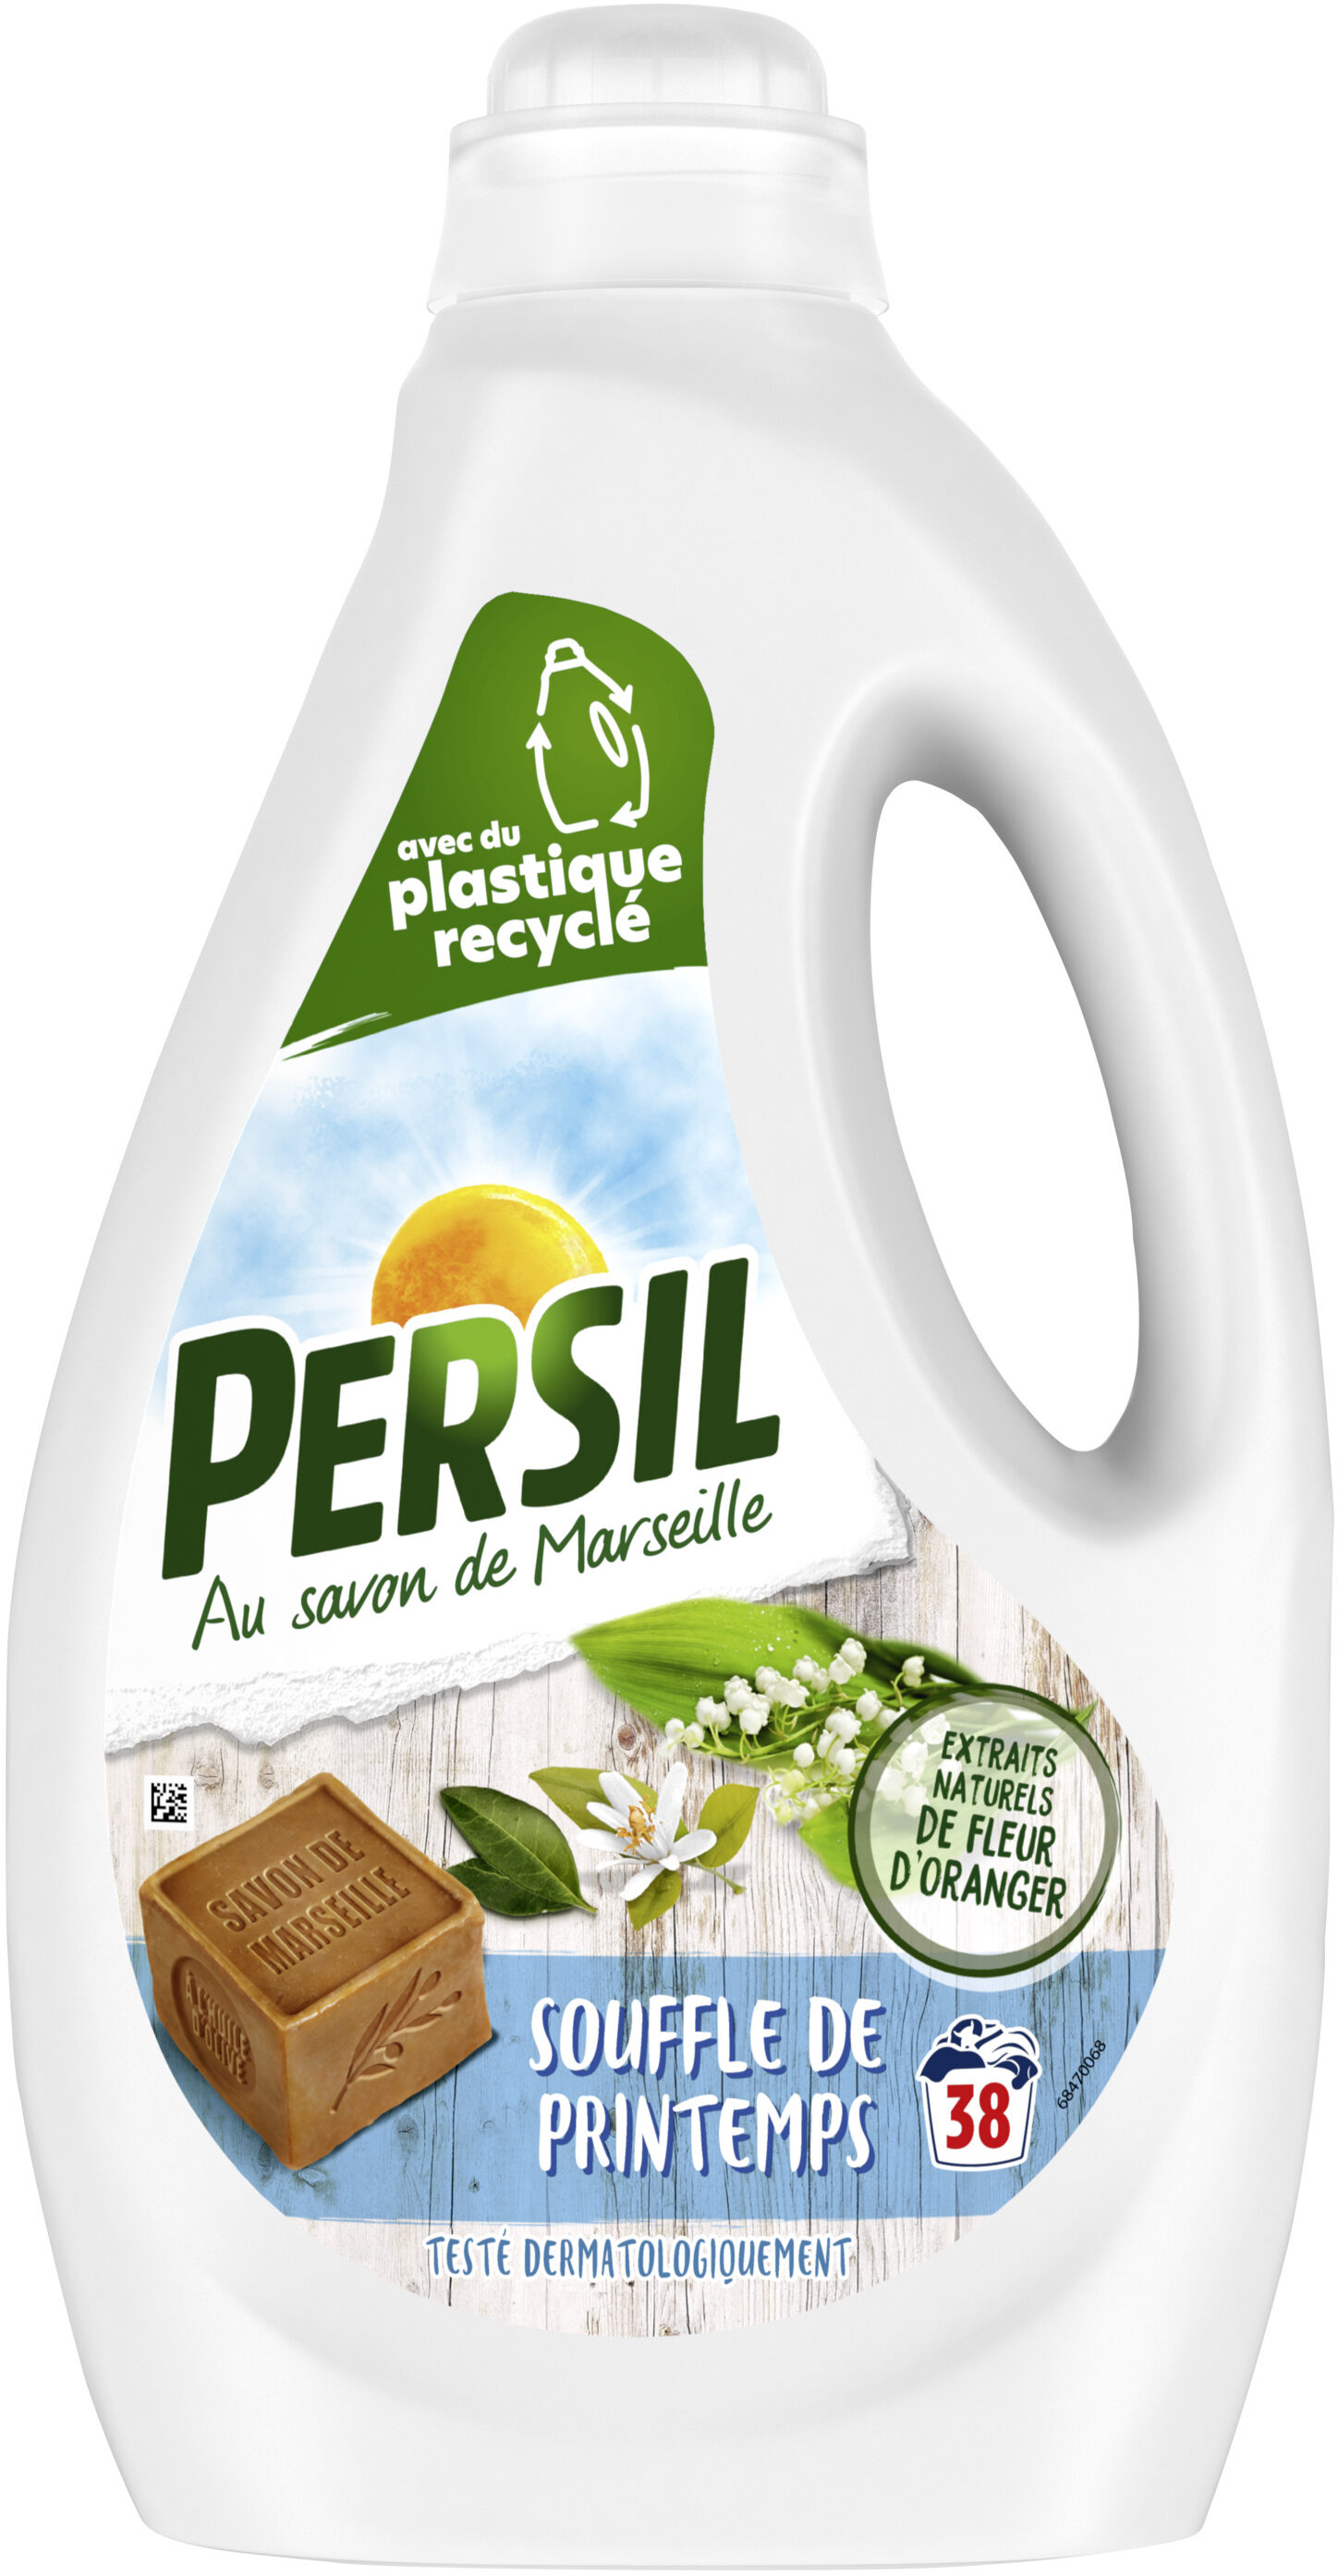 Persil Lessive Liquide Souffle de Printemps aux extraits naturels de Fleur d'Oranger 1,9l 38 Lavages - Product - fr